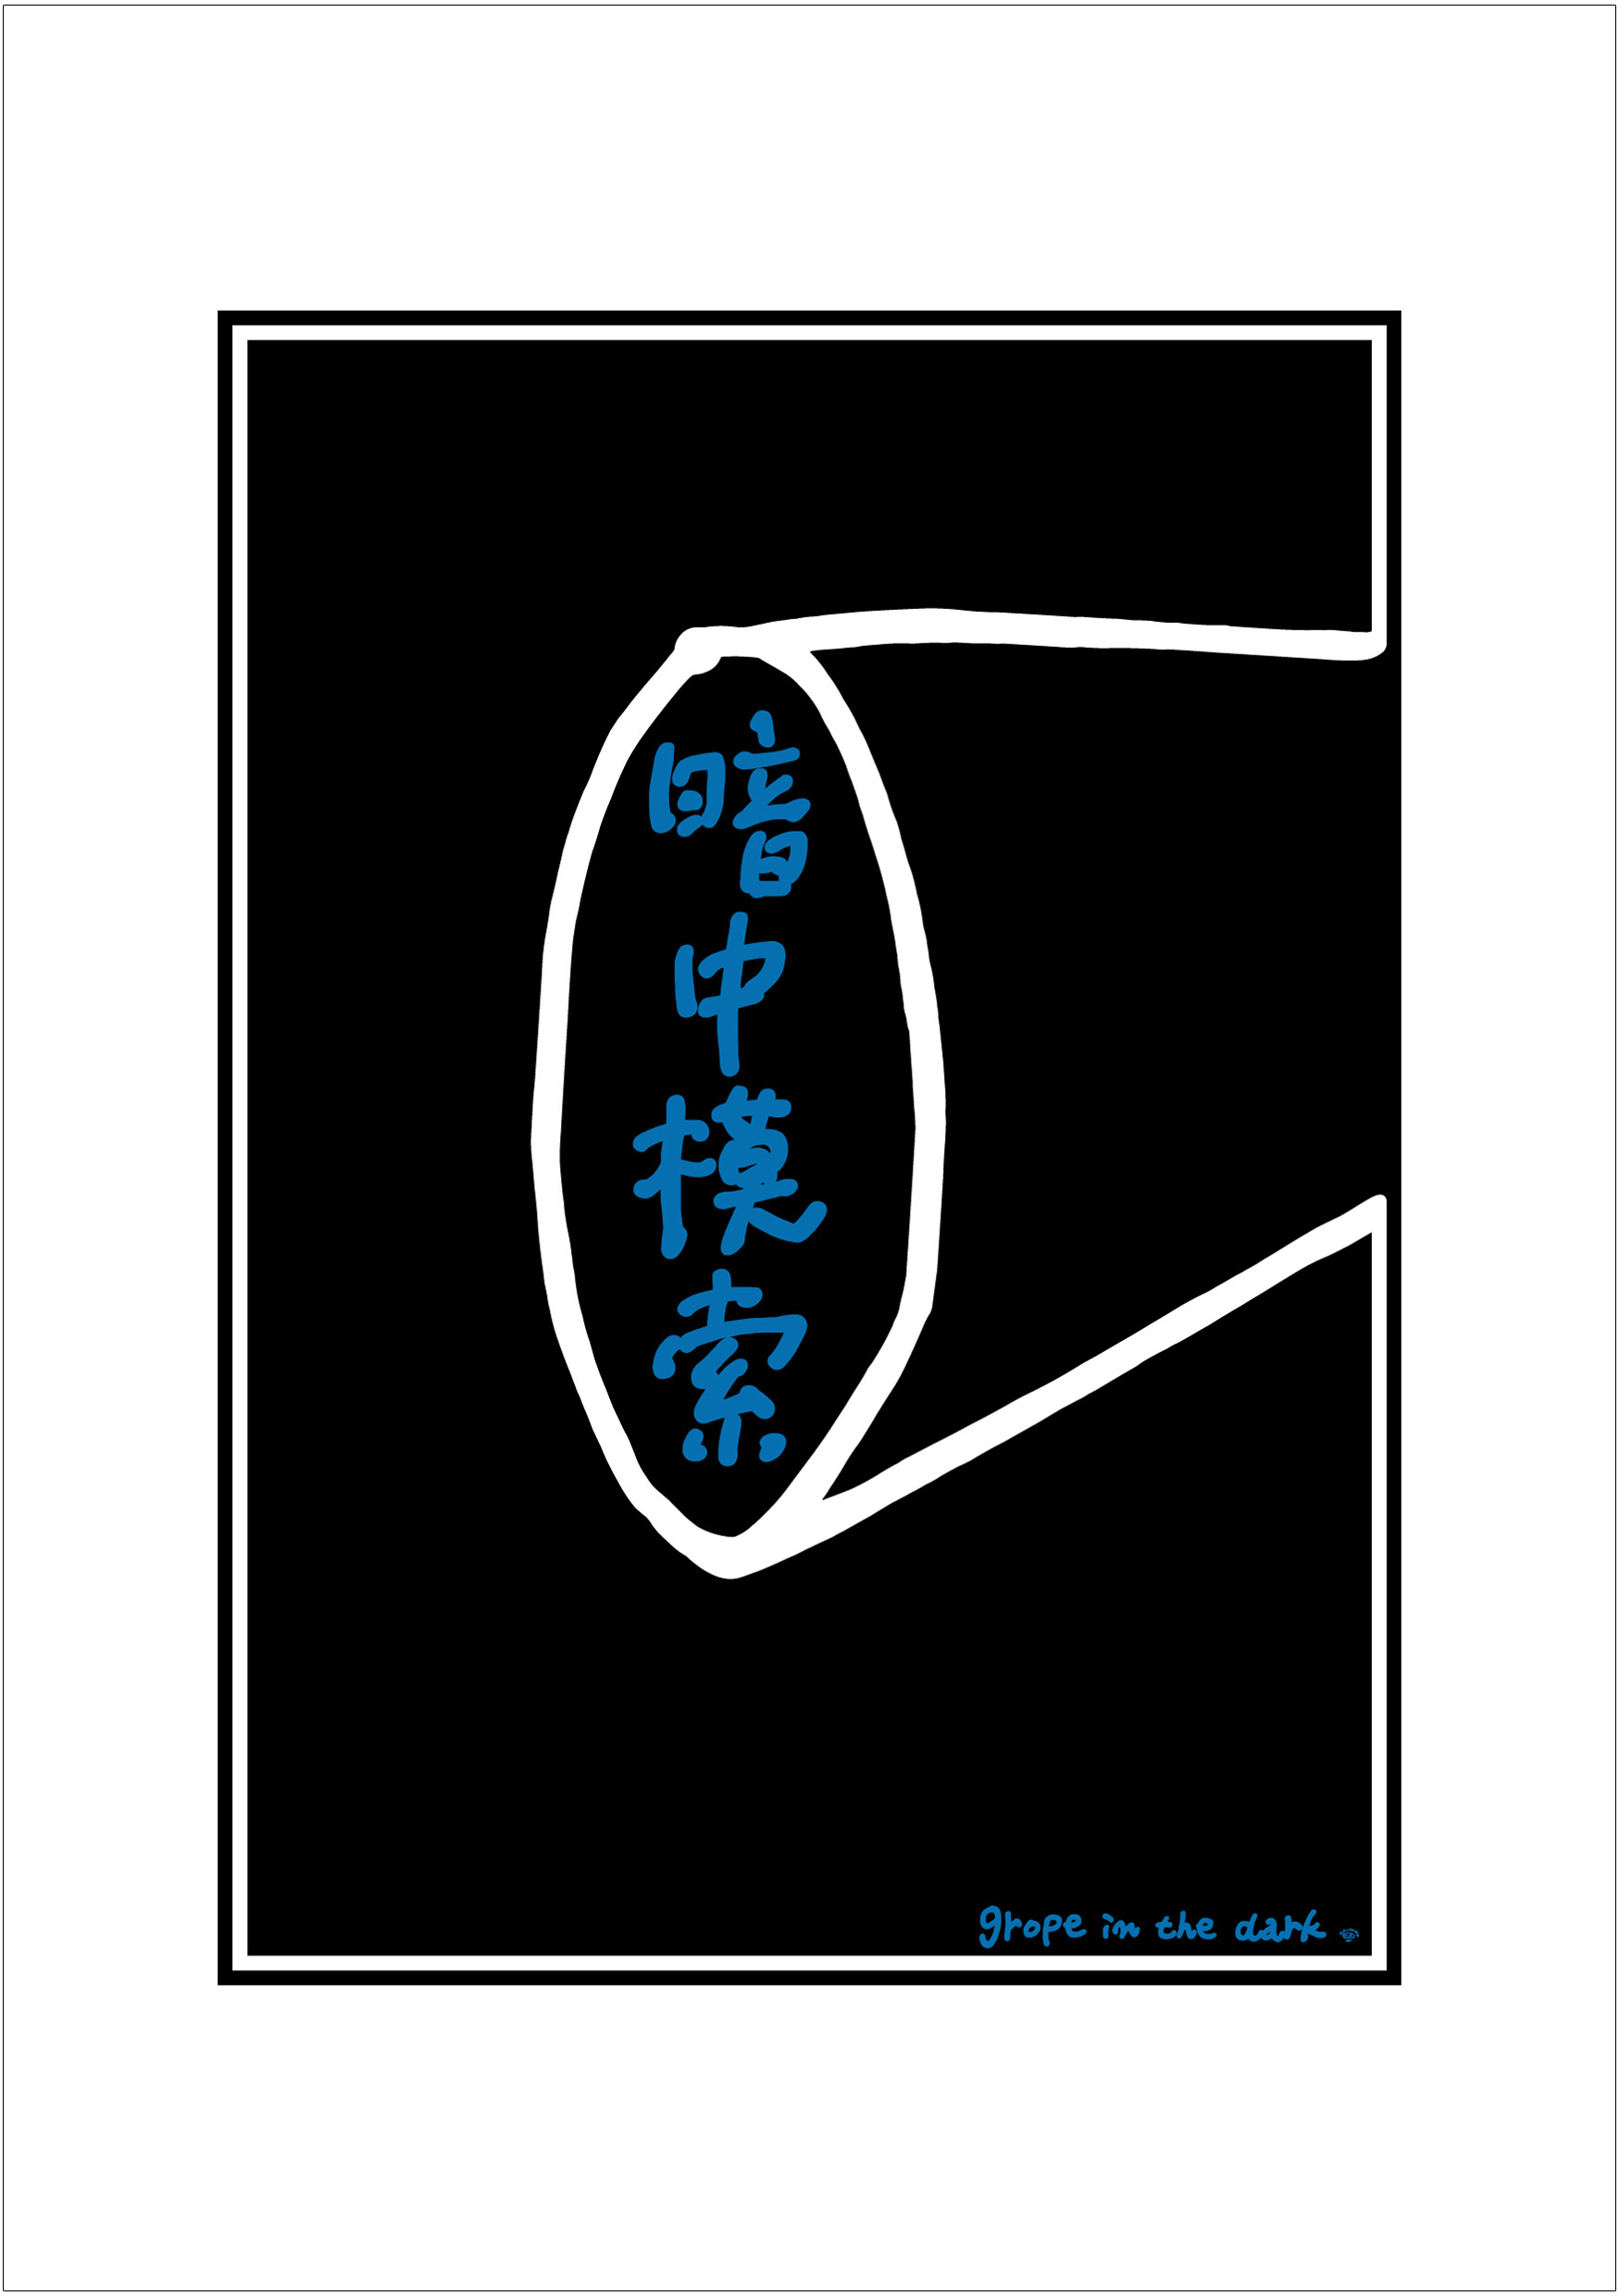 ポスターアーティスト秋山孝が2005年に制作したアートカード「アートカード ポスター 2005 08」